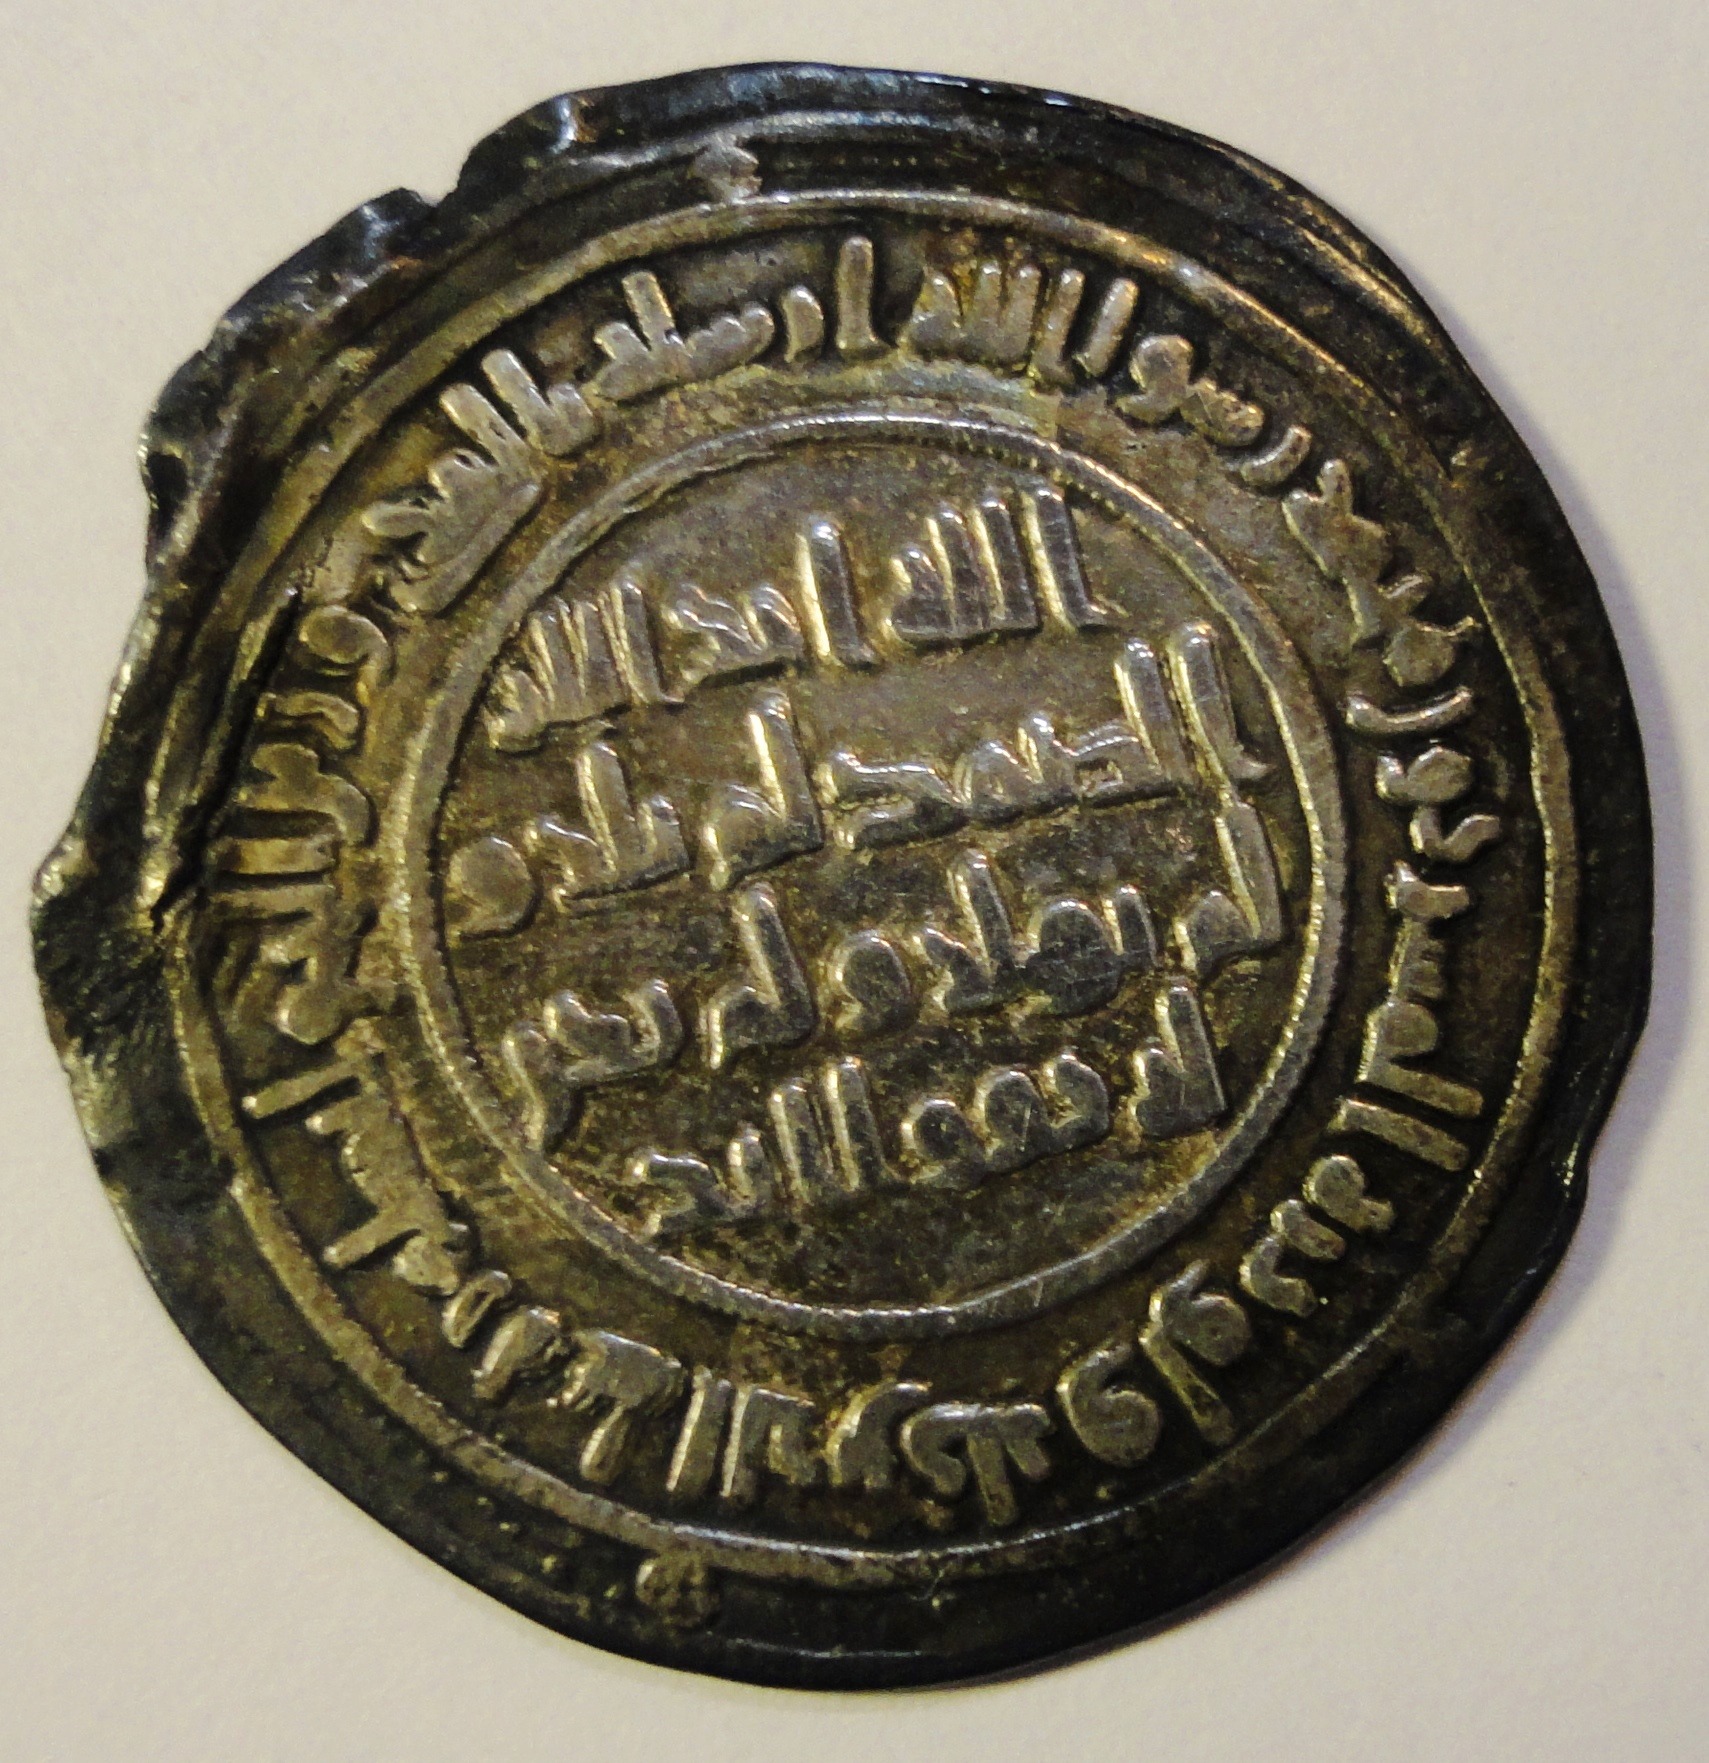 Die älteste Münze des Museums, die 699 n. Chr. geprägt wurde